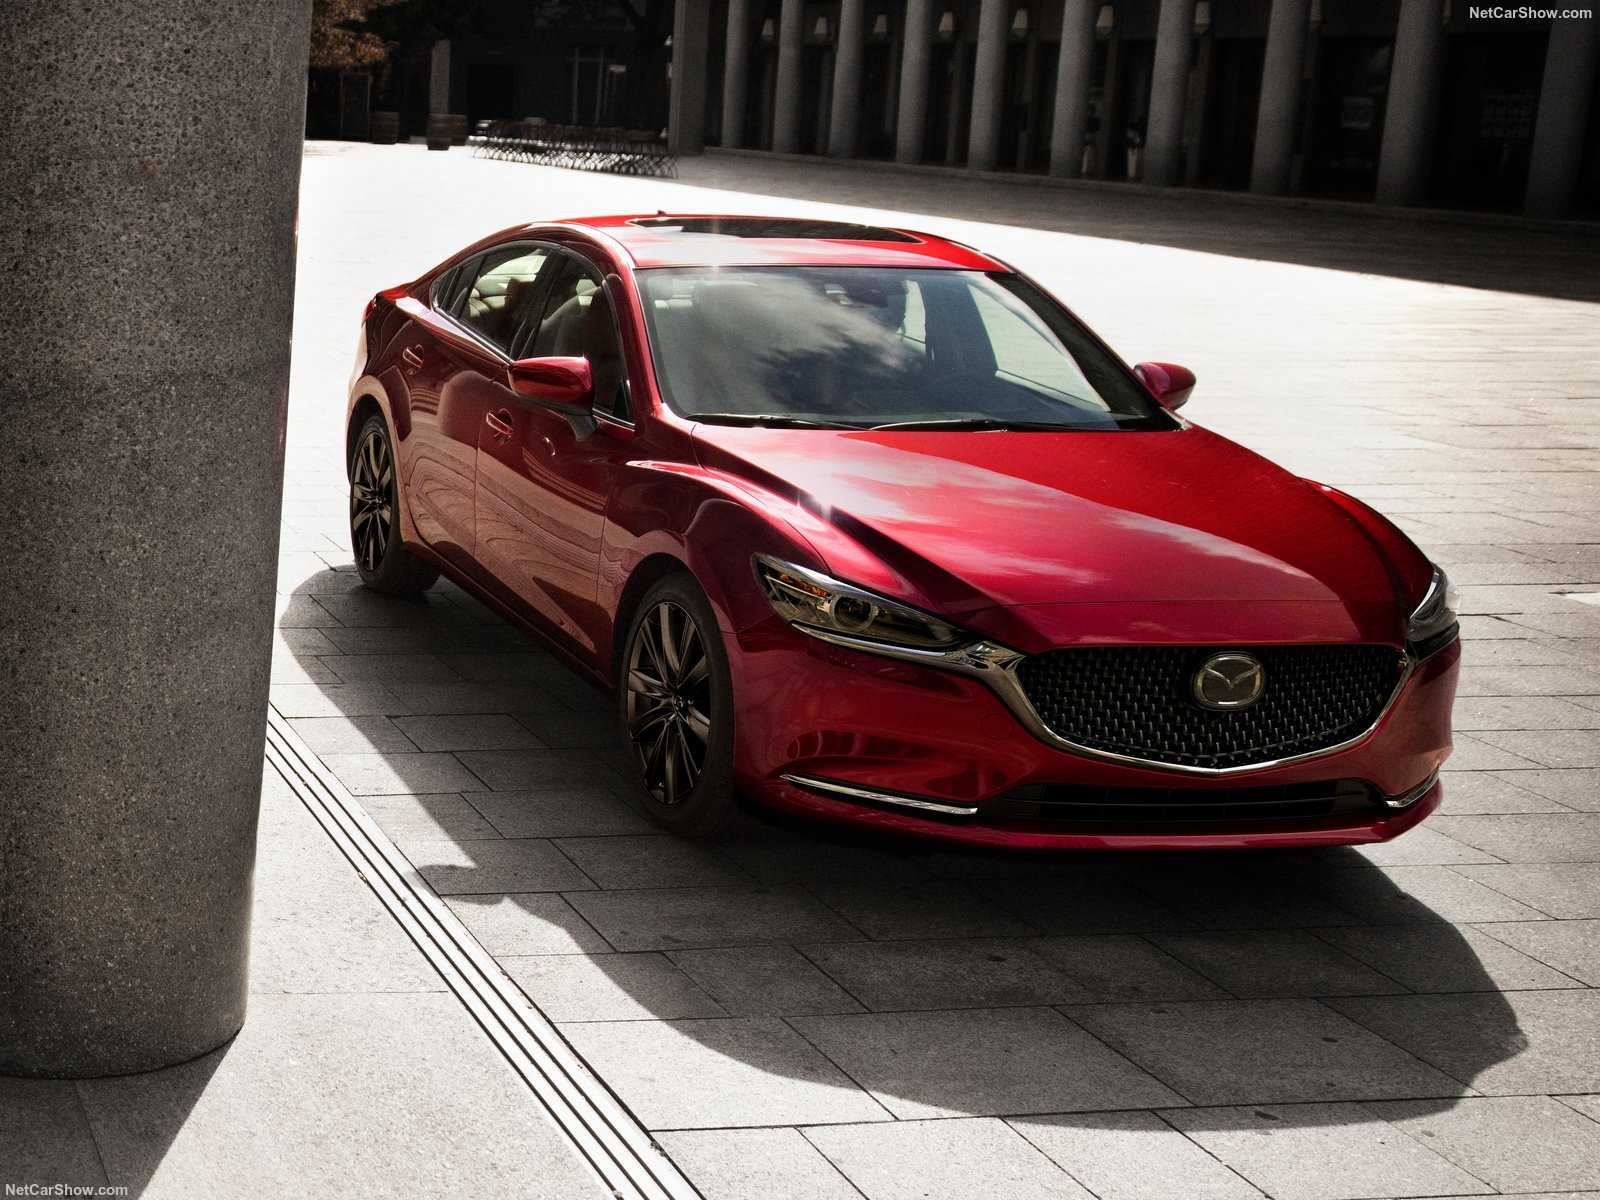 Mazda 6 gj (3 поколения) – слабые места, поломки, покупка бу авто